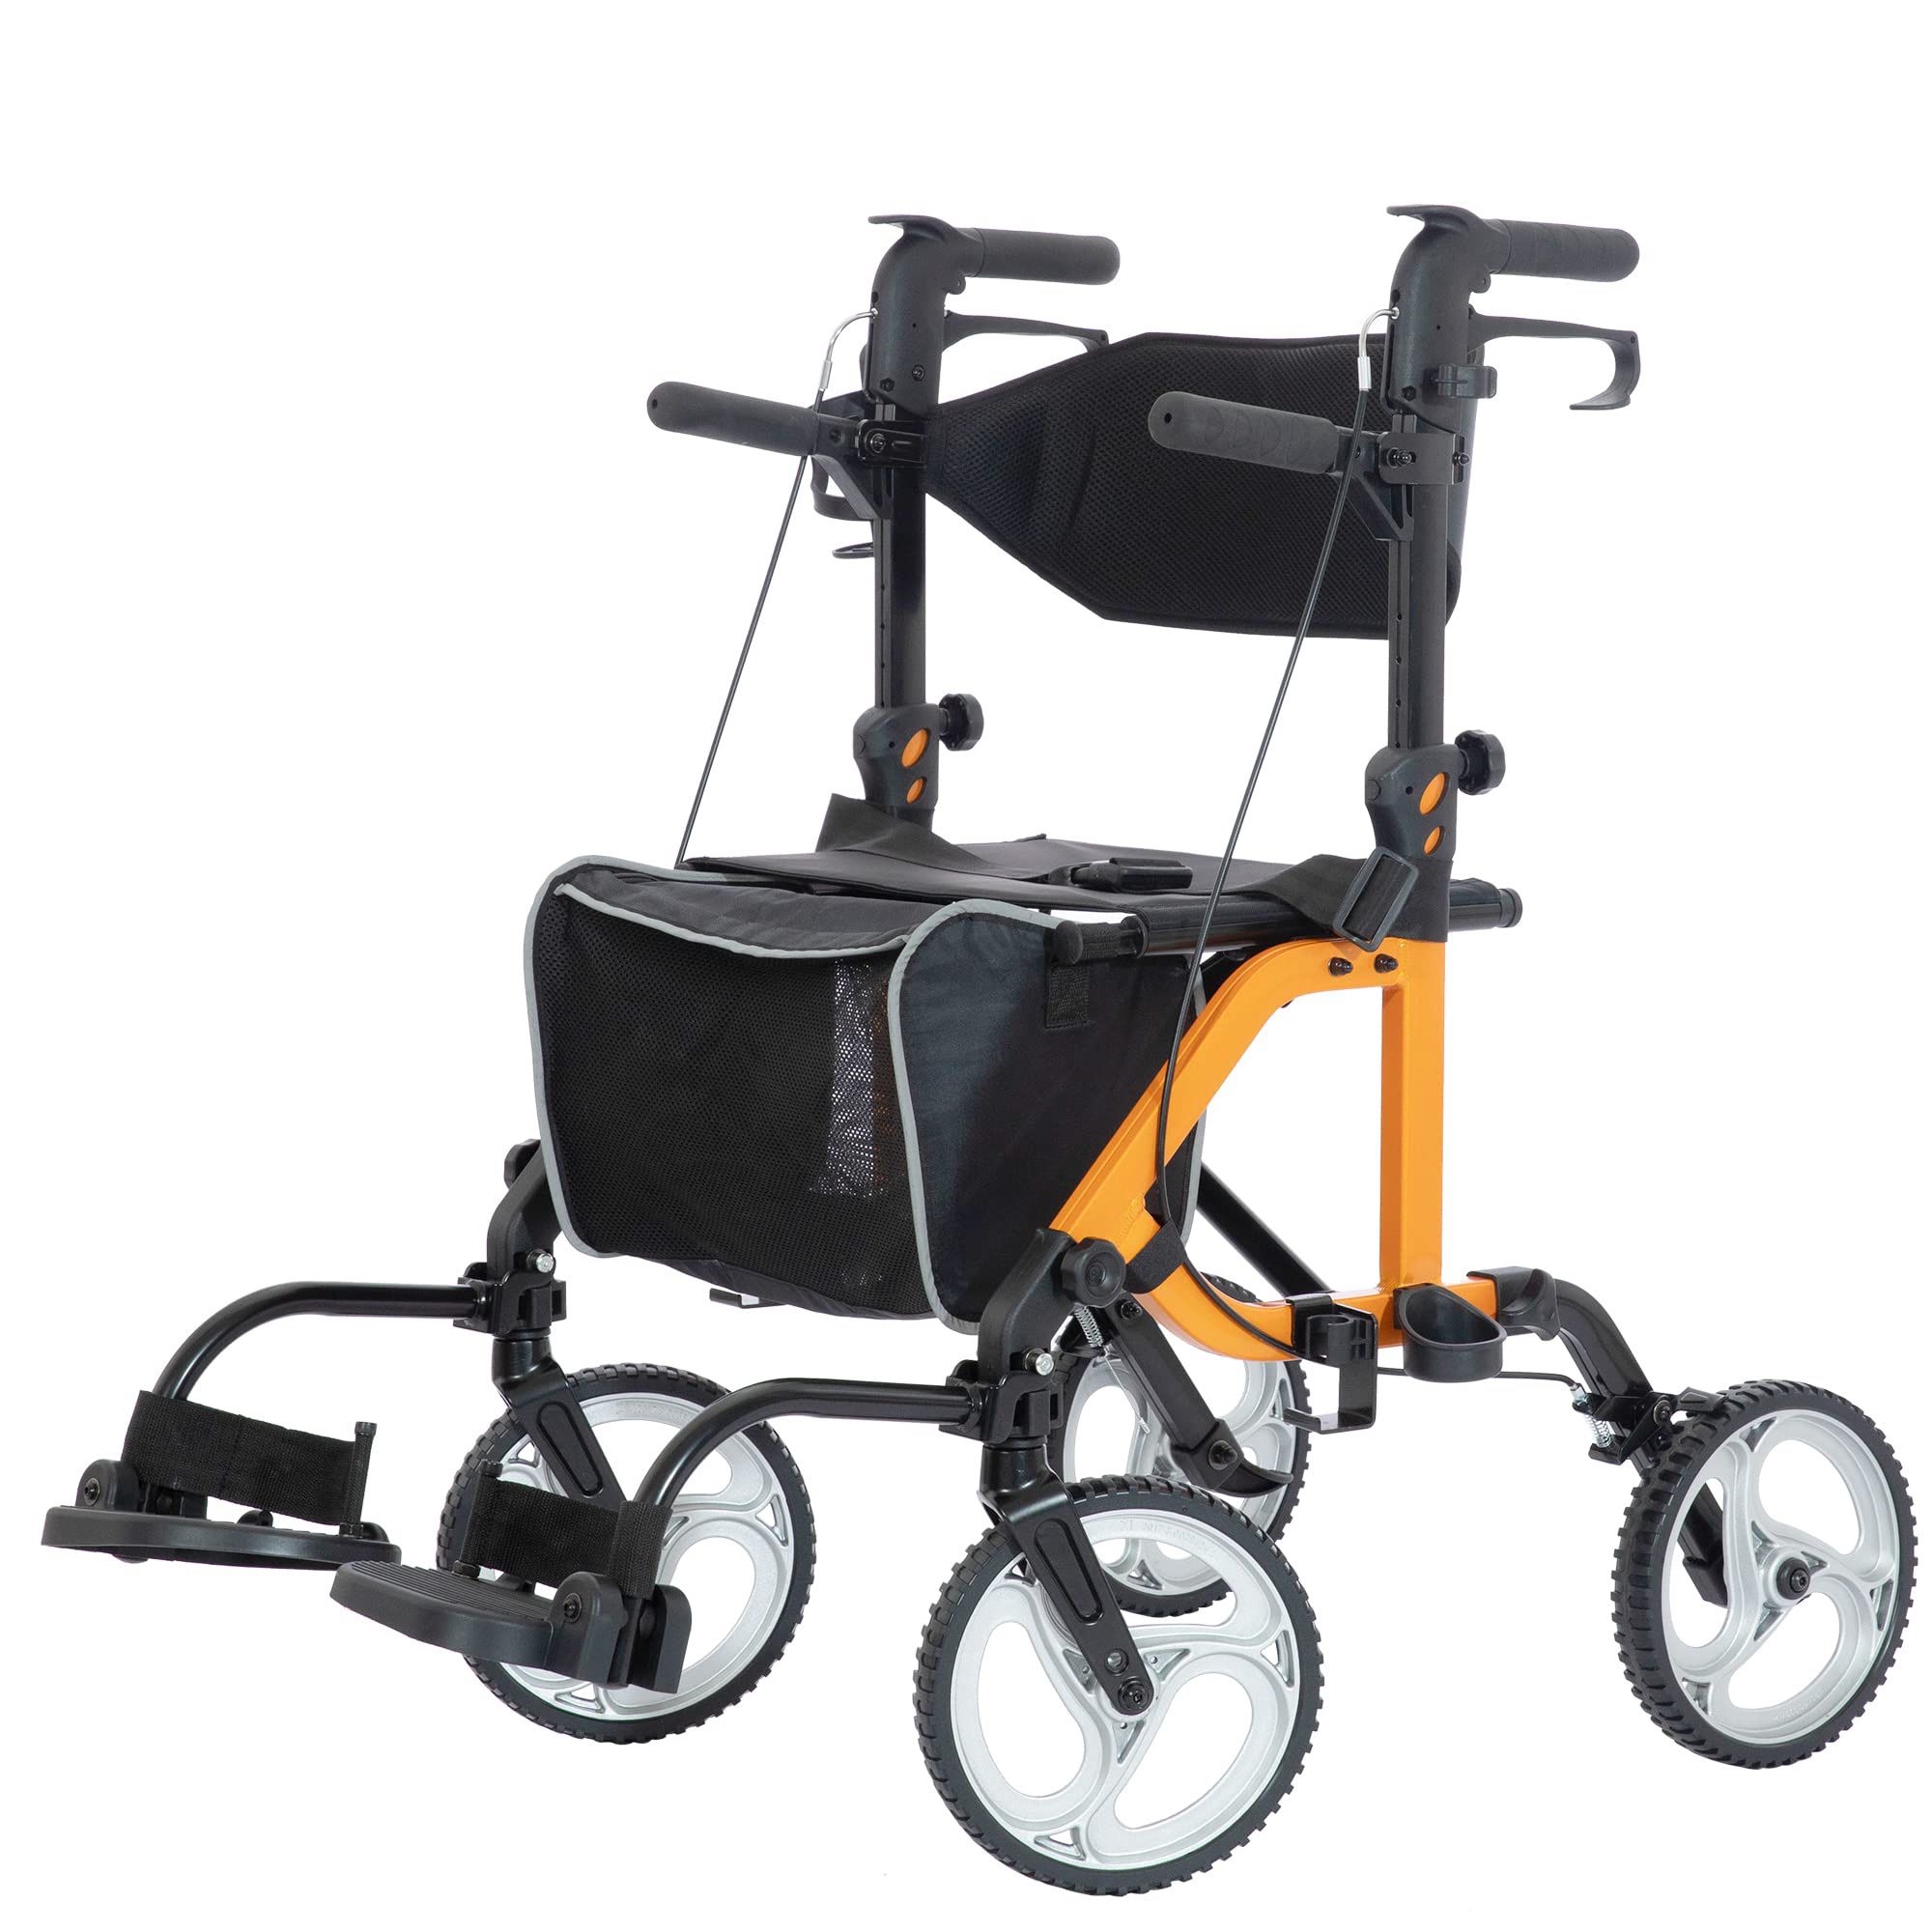 ELENKER 2 in 1 Rollator Walker & Transport Chair, Folding Wheelchair with 10” Non-Slip Wheels for Seniors, Reversible Backrest & Detachable Footrests,